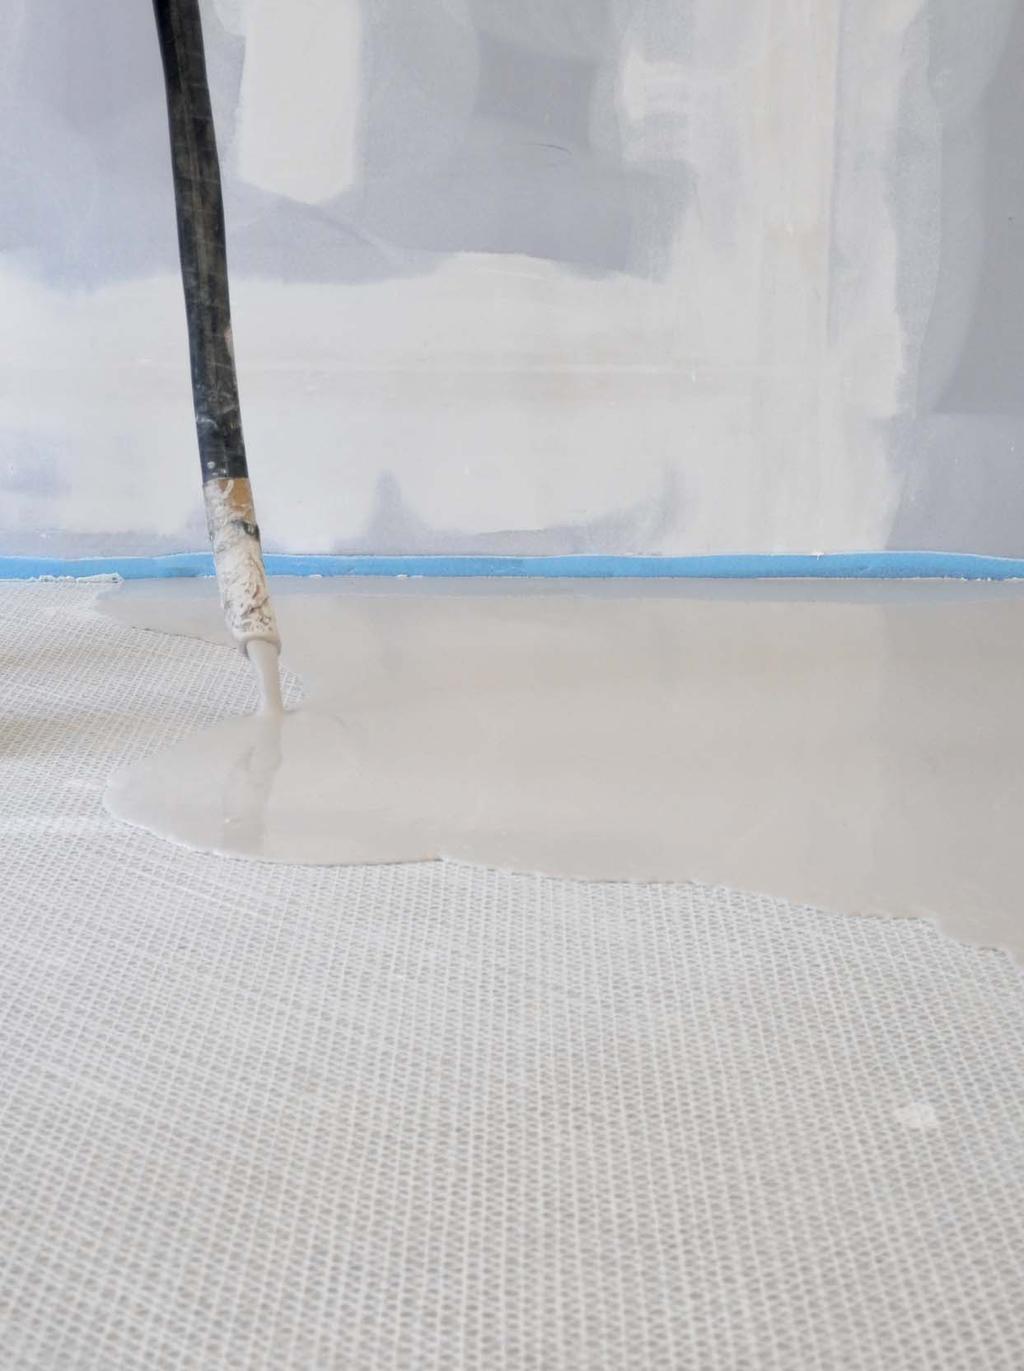 12 Podlahové vyrovnávací stěrky Garance kvality pro Vaše podklady Pro kvalitní pokládku podlahových krytin je rozhodující správná příprava podkladu.